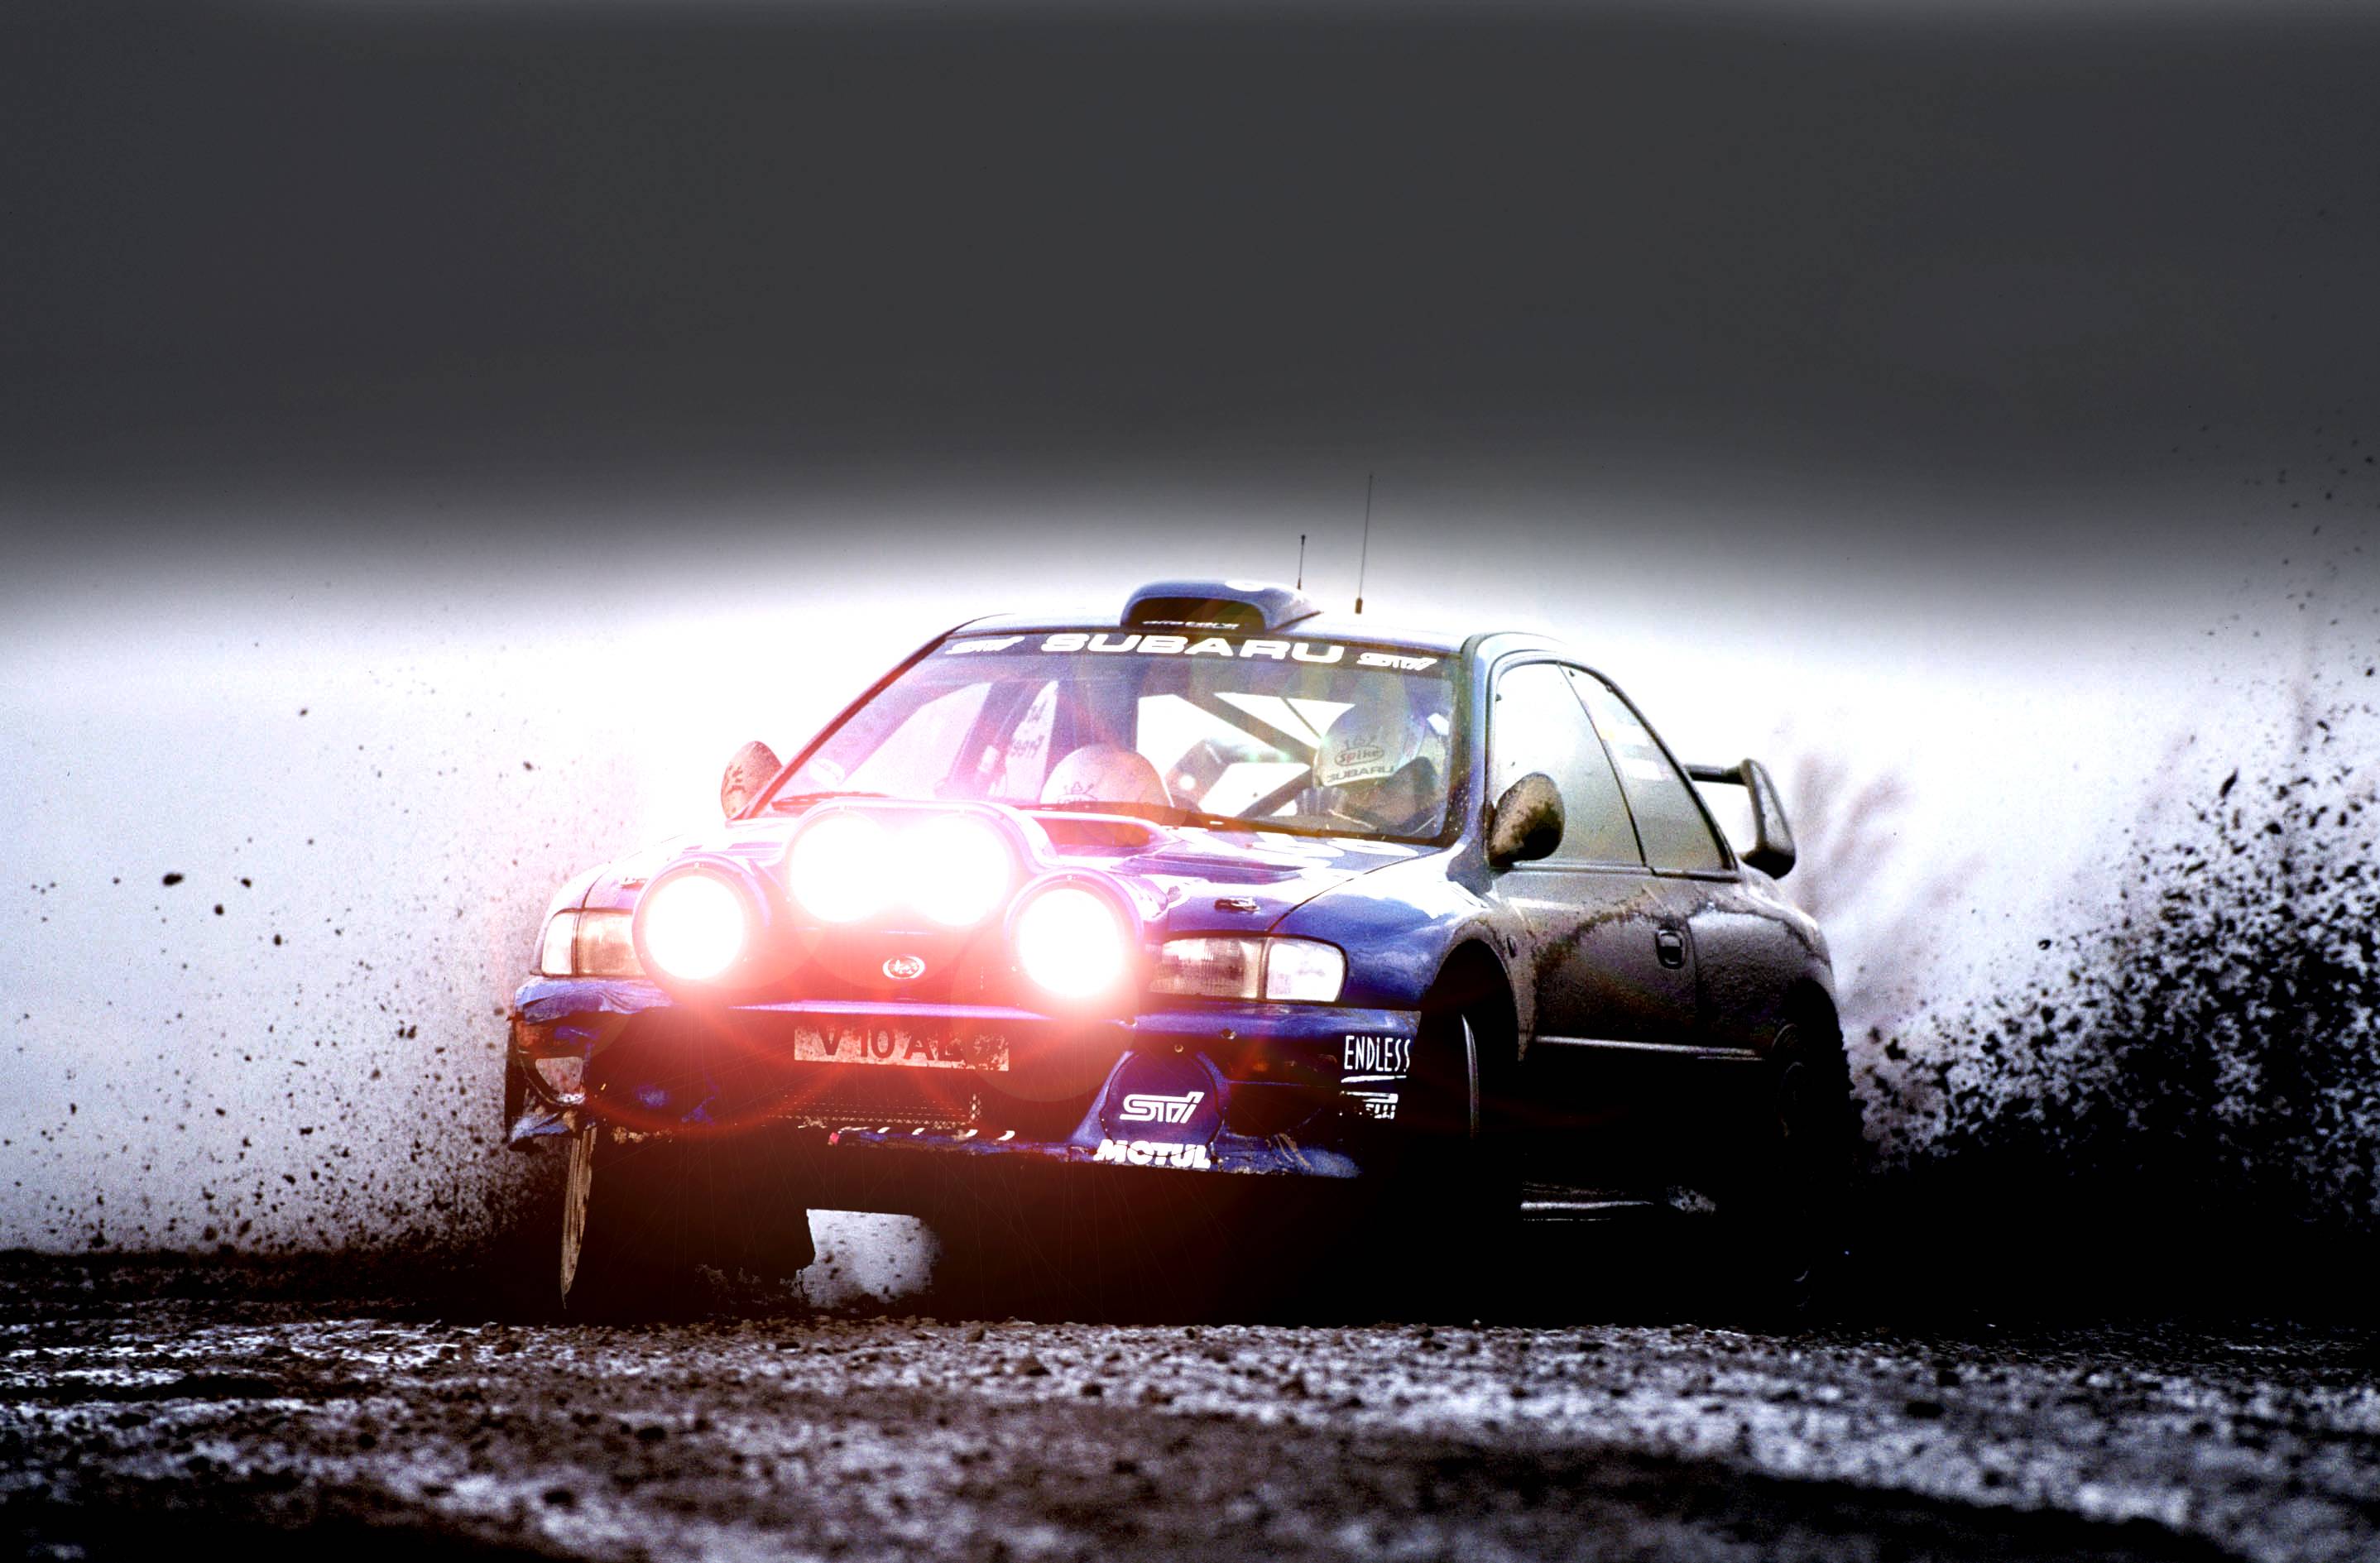 Fondos de pantalla de Subaru. Wallpaper de Subaru. Fondos de